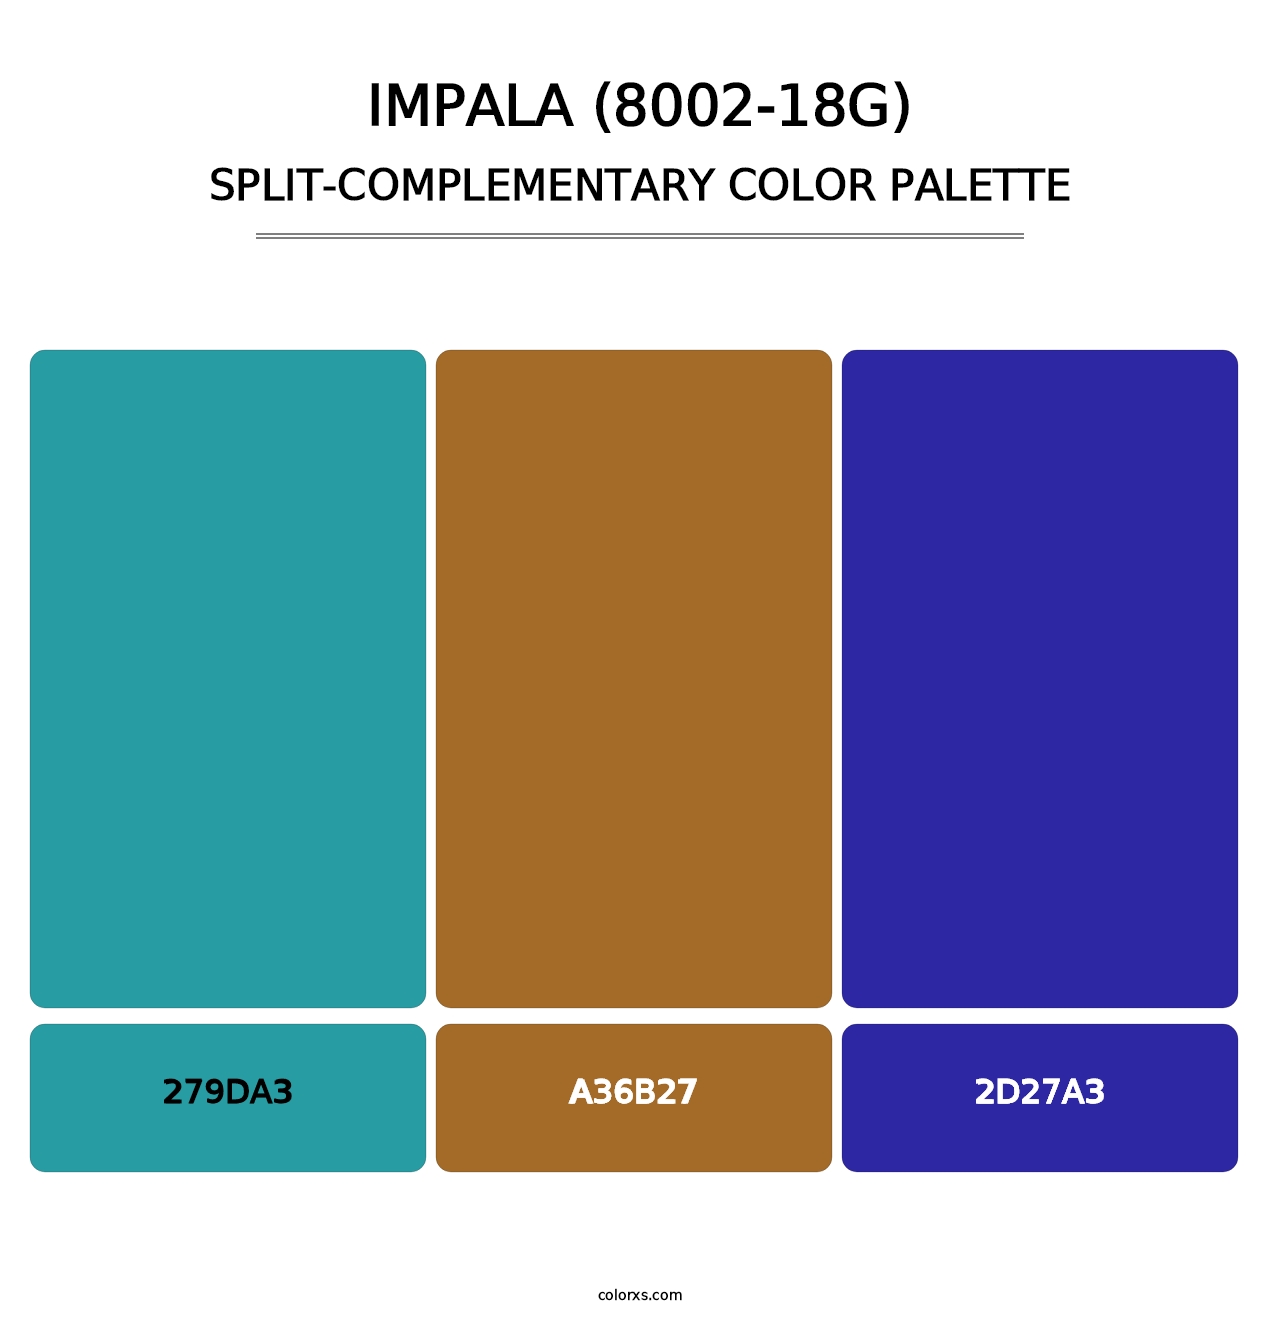 Impala (8002-18G) - Split-Complementary Color Palette